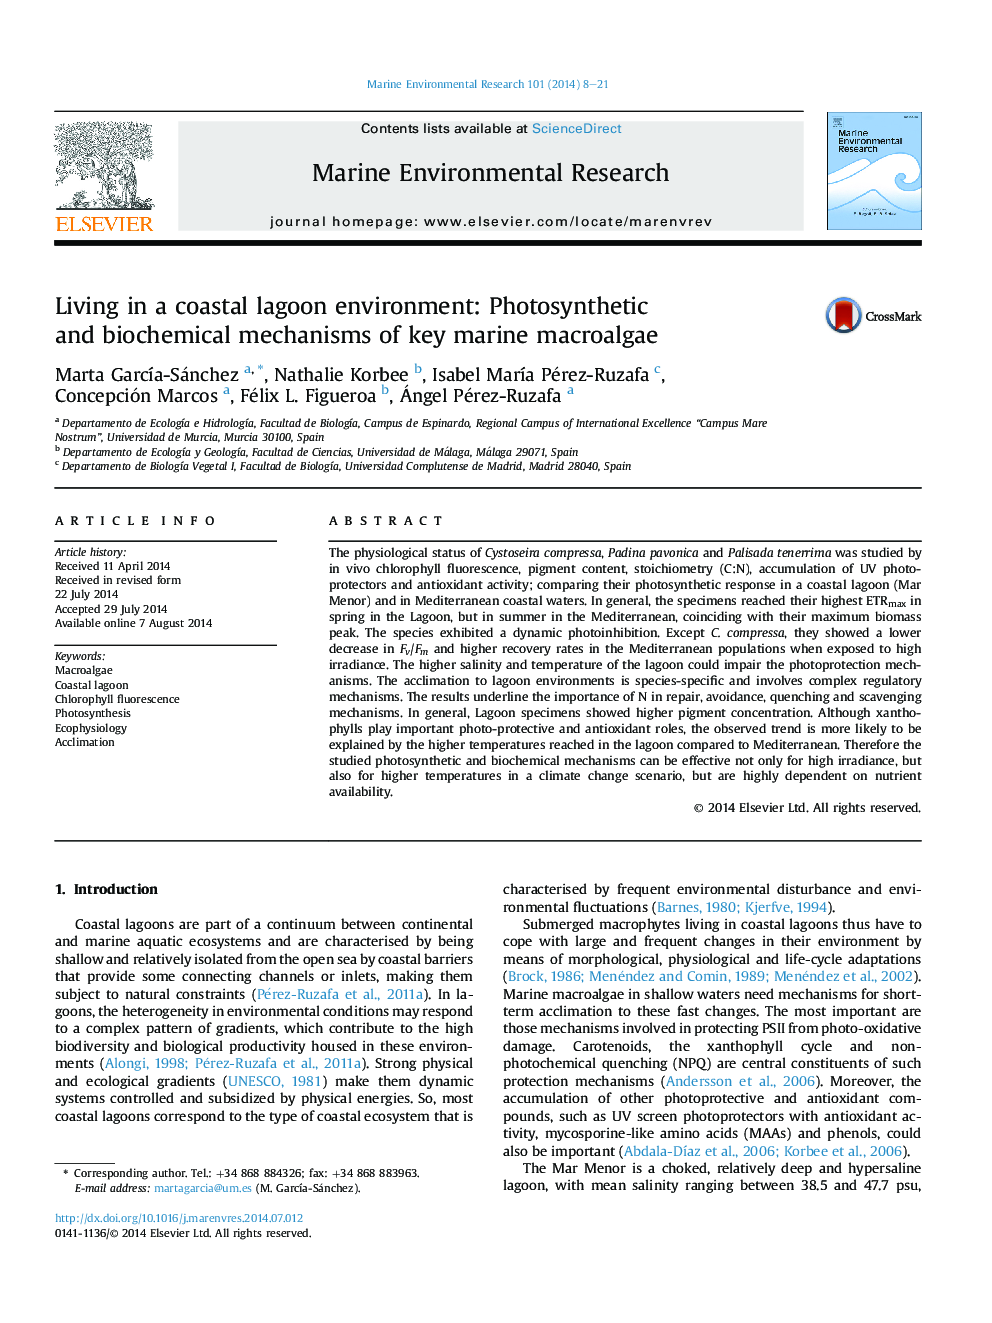 محیط زیست لابون ساحلی: مکانیسم های فتوسنتزی و بیوشیمیایی کلر زارهای کلیدی دریایی 